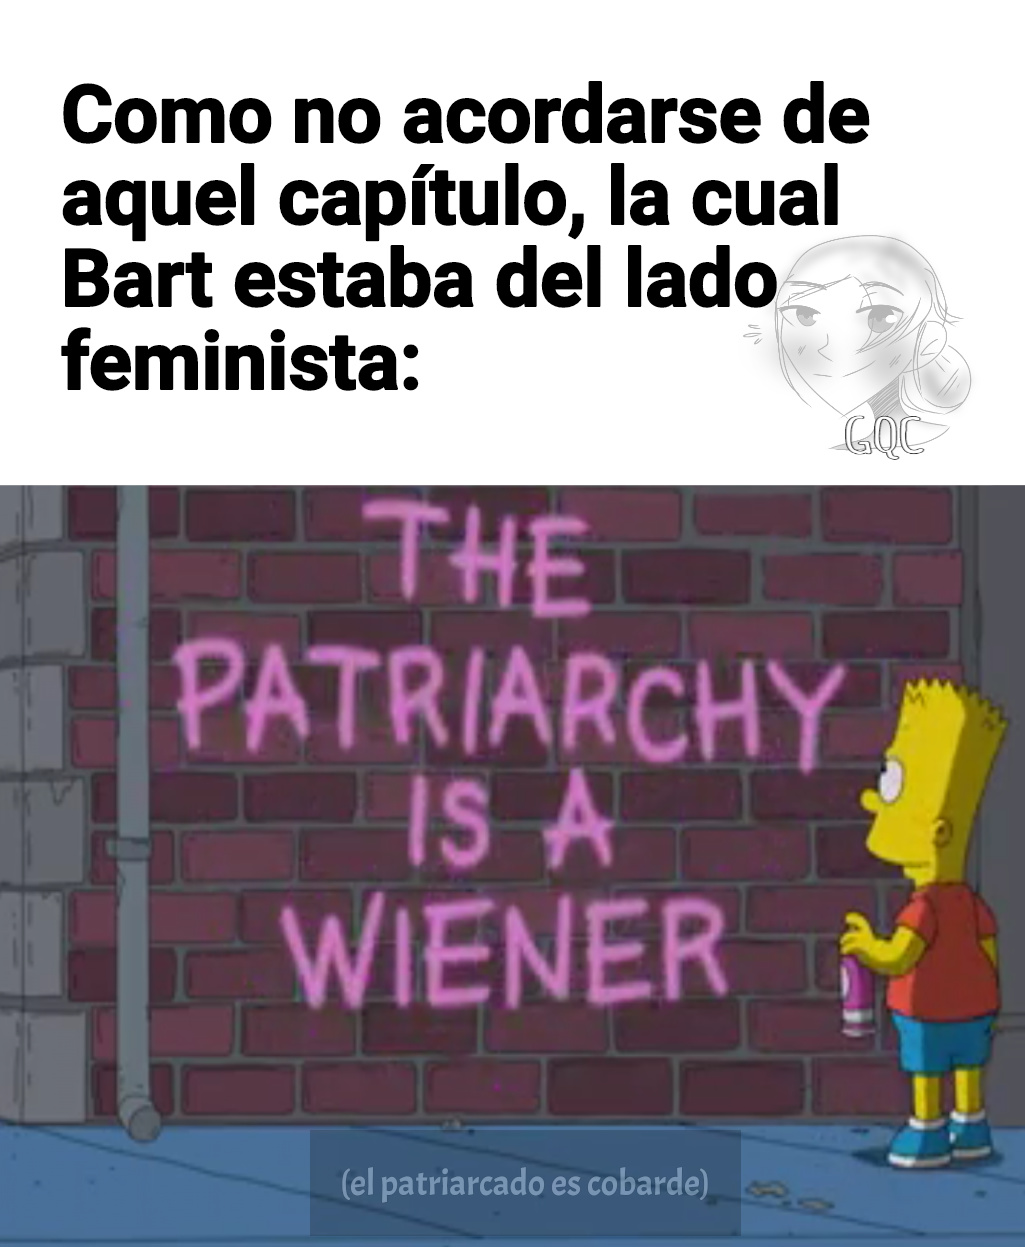 Si, lo sé, otro meme sobre feminismo, malardo ._.XD